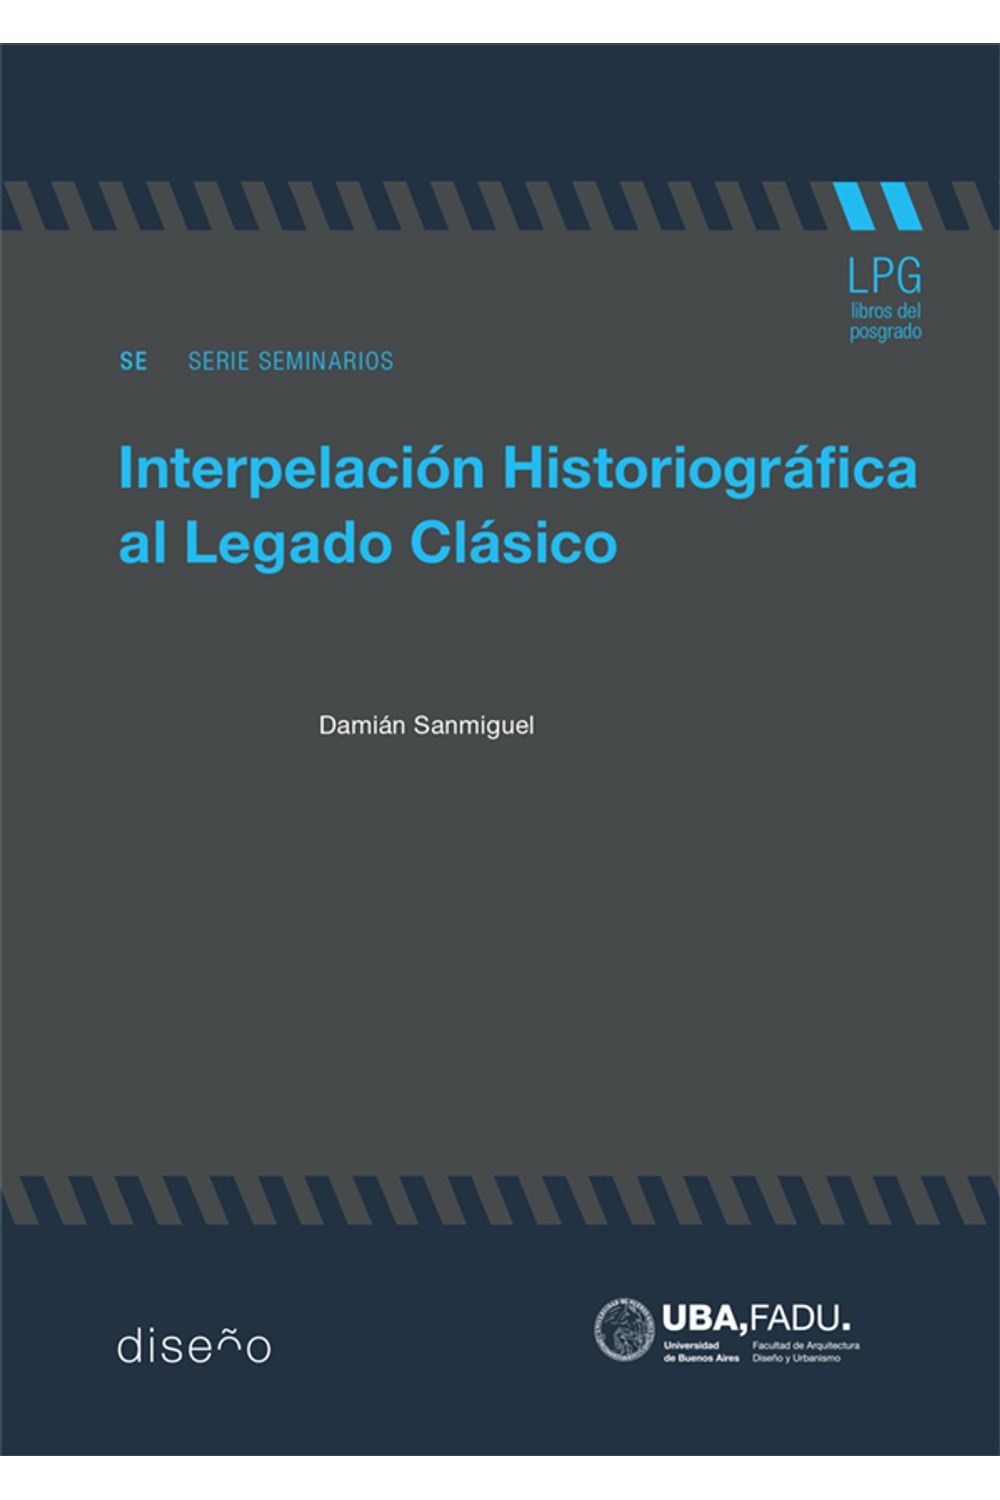 bm-interpelacion-historiografica-del-legado-clasico-nobukodiseno-editorial-9789874160836